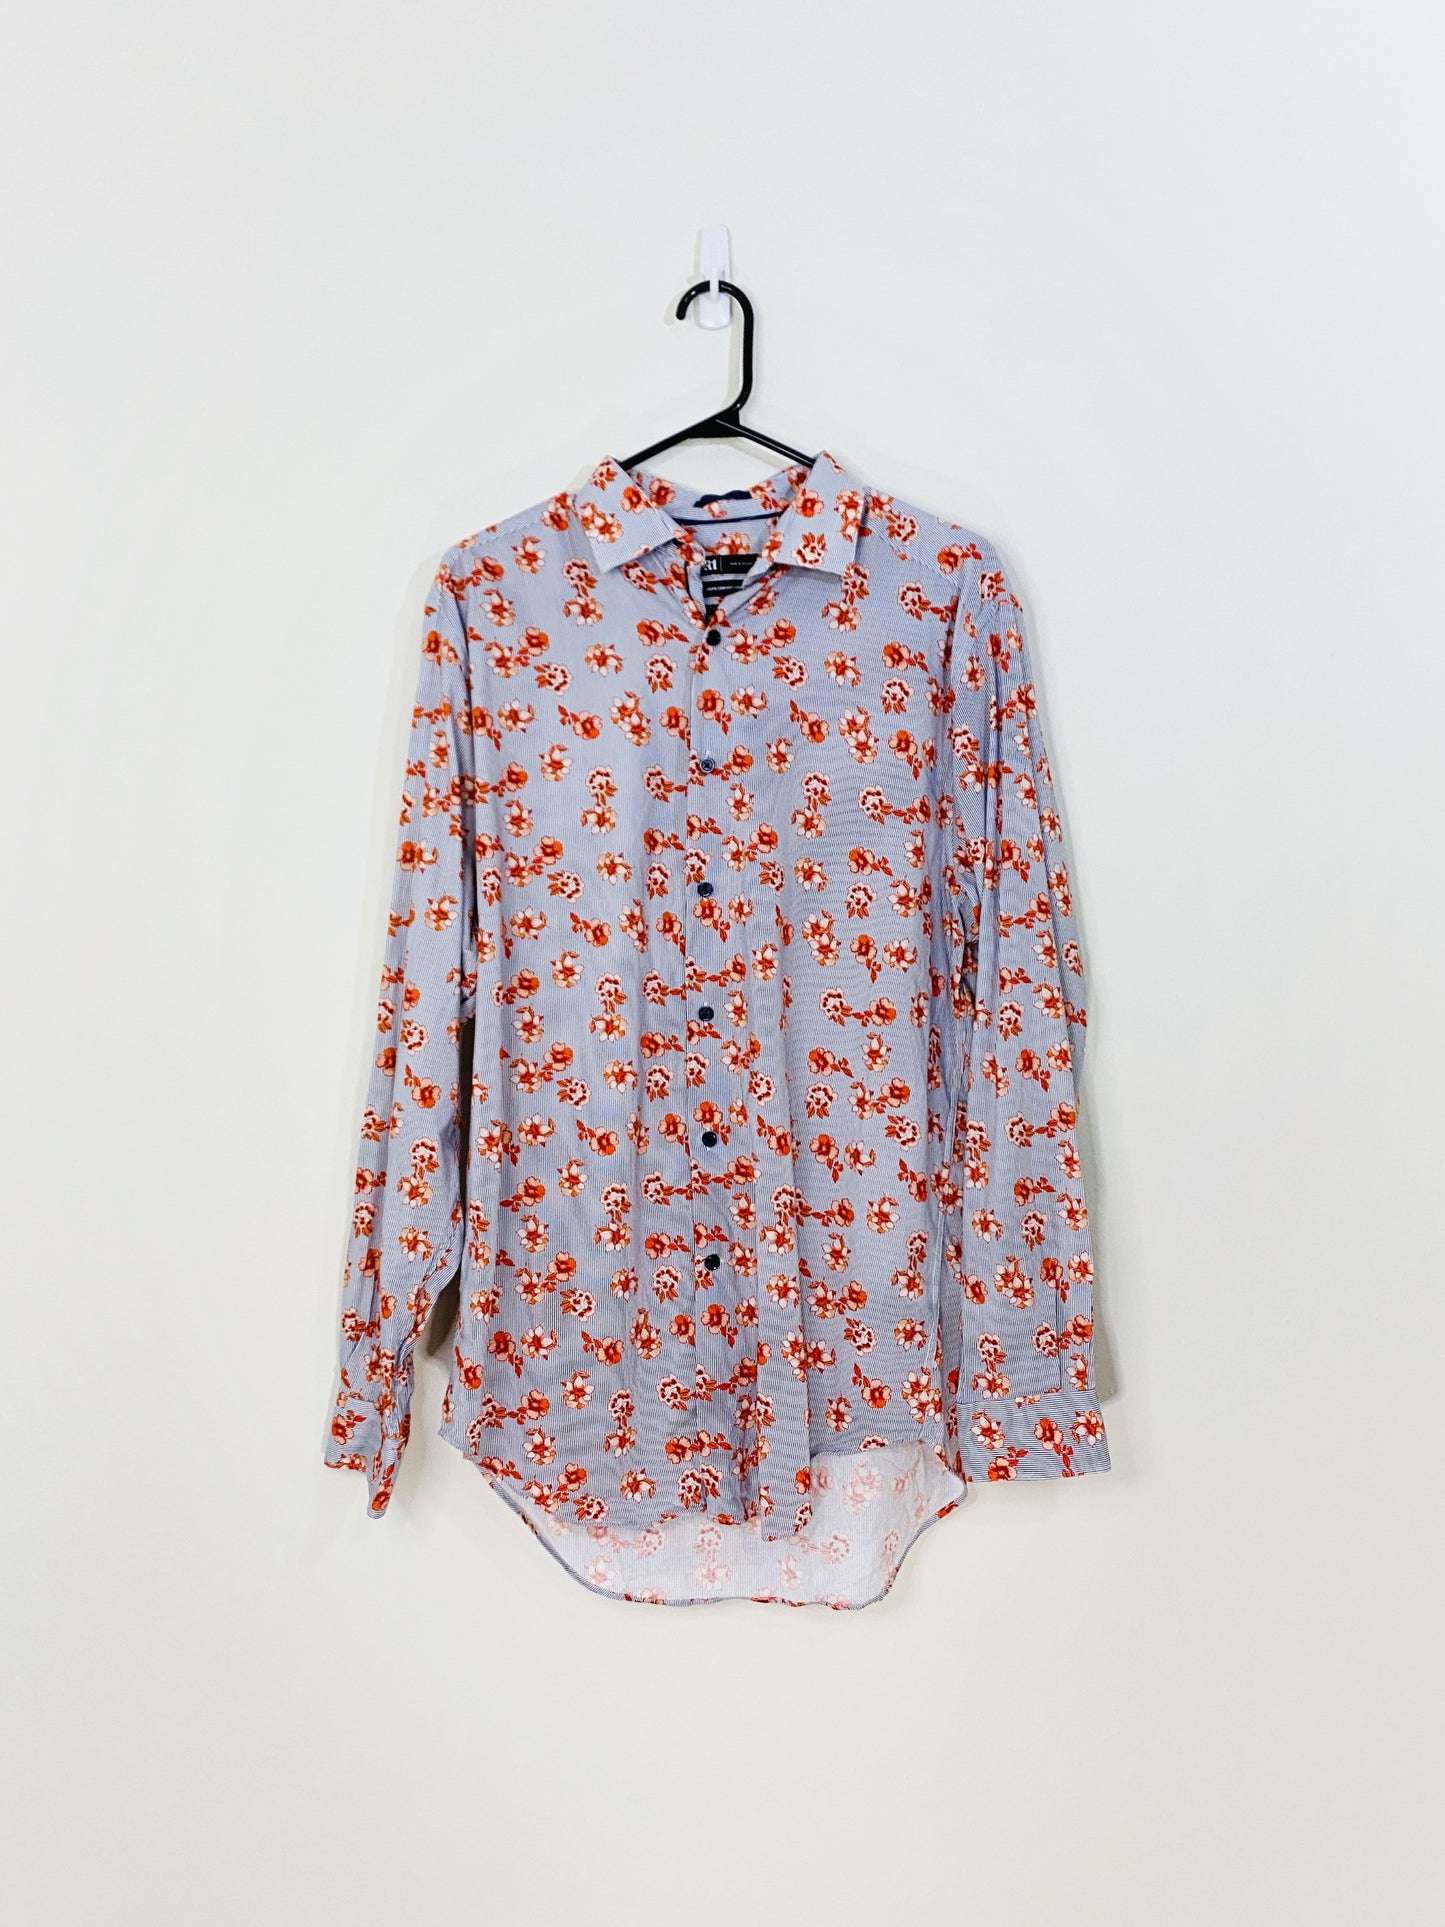 Floral Button Down Shirt (Medium)(15.5)